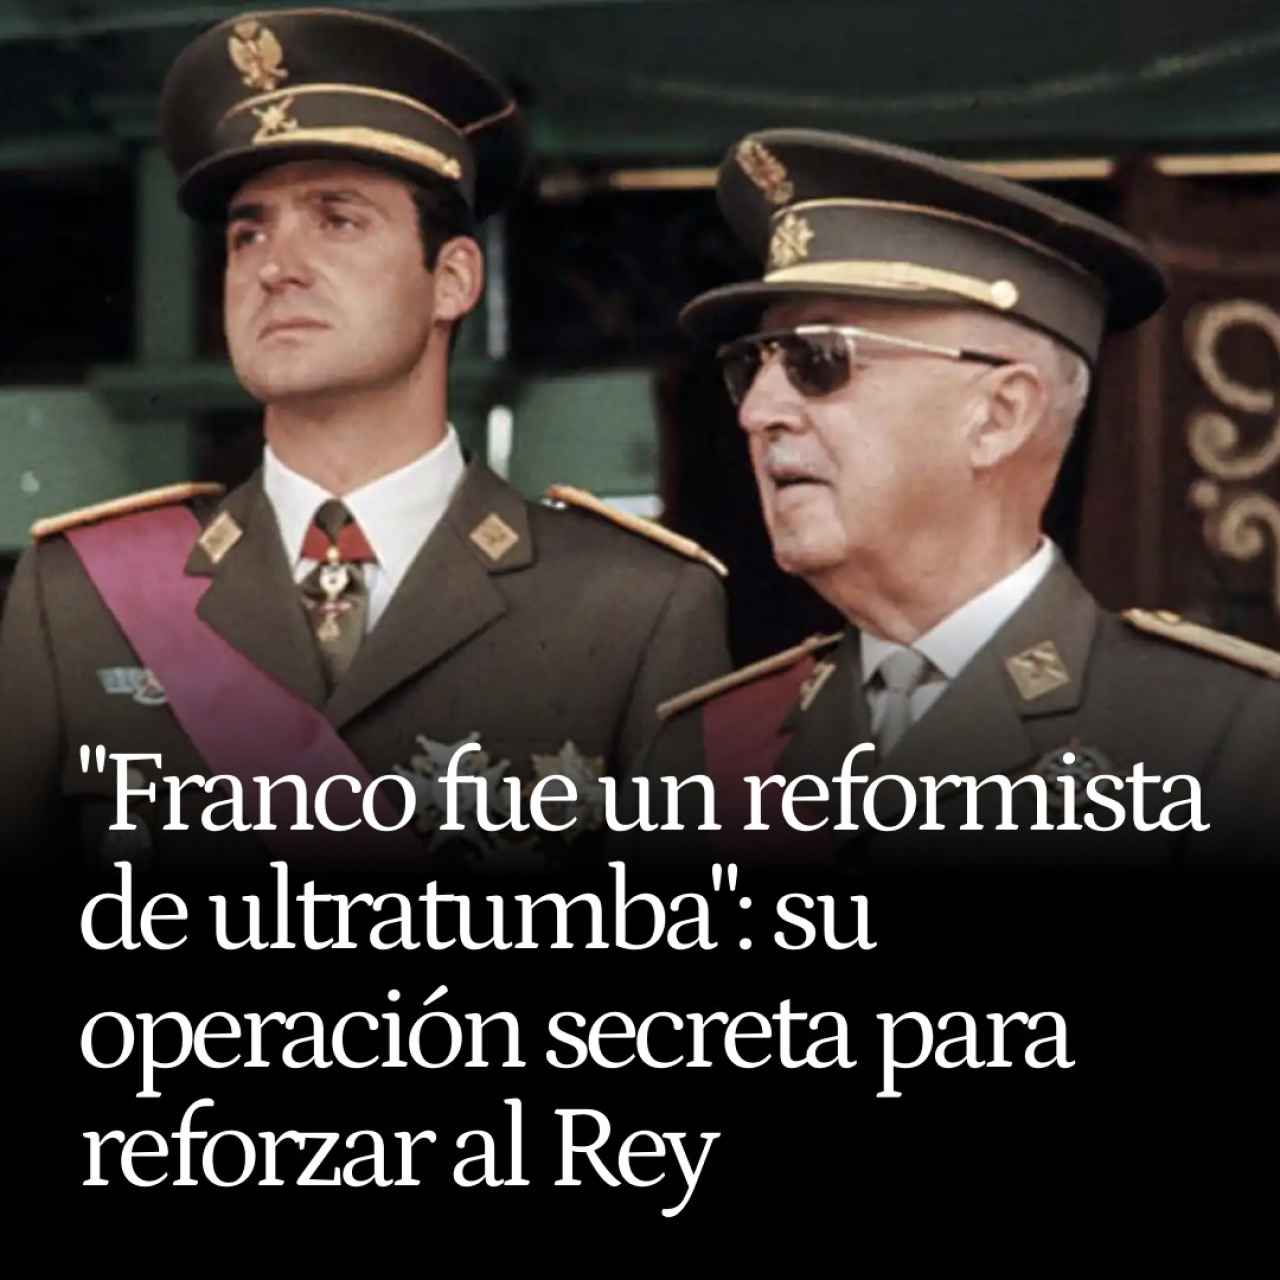 "Franco fue un reformista de ultratumba": desvelan su operación secreta para reforzar al rey Juan Carlos